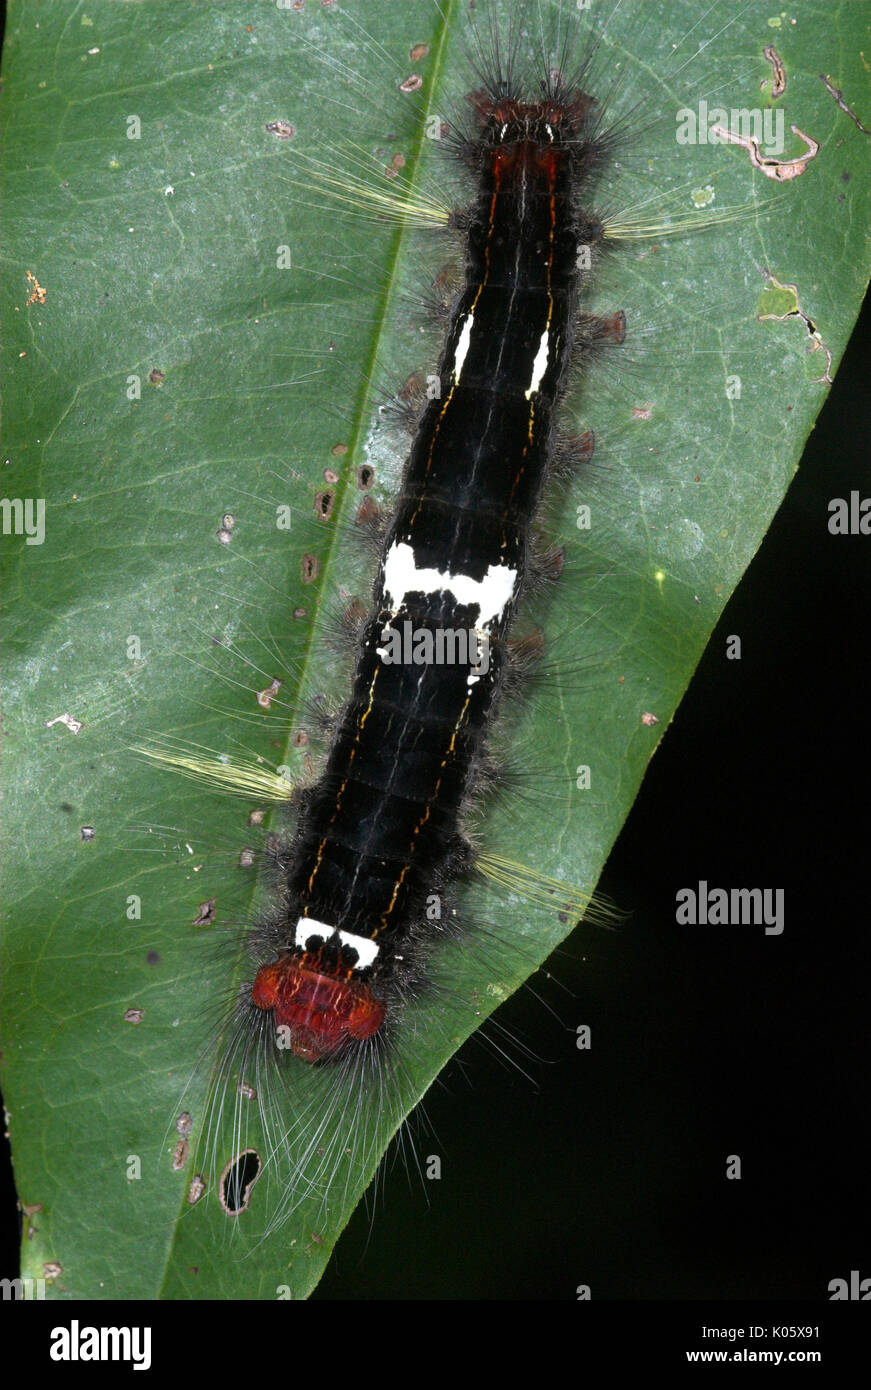 Caterpillar, Arten unbekannt, auf Blatt mit urticating Haare, Manu, Peru, Amazonas Dschungel, lepidopterism, Schwarzer body mit roten und gelben Streifen. Stockfoto